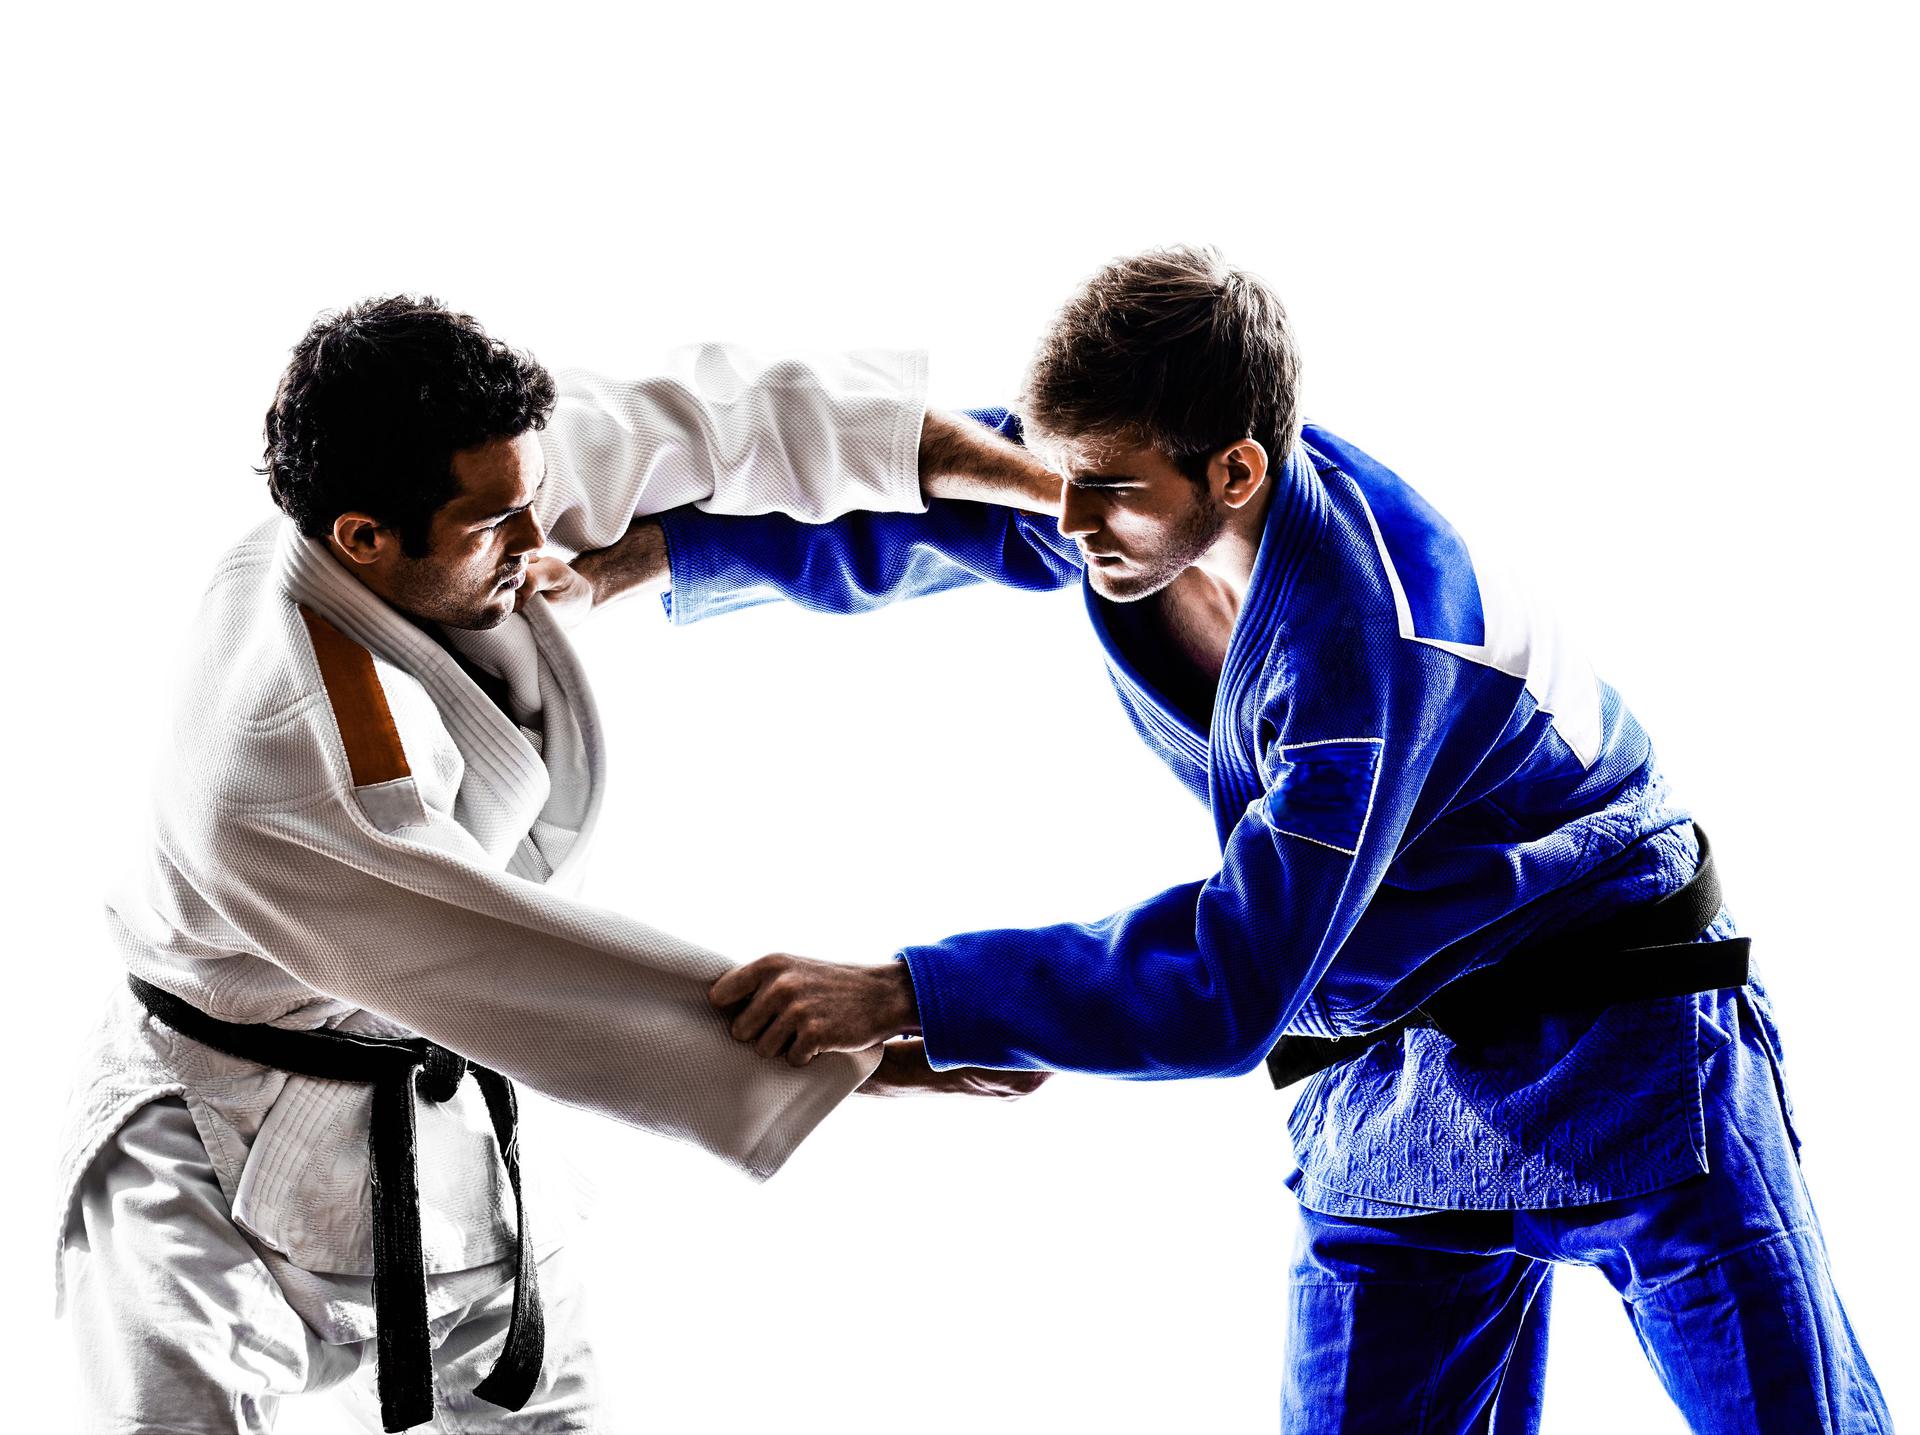 Judo: techniki, zasady i efekty trenowania judo - WFormie24.pl